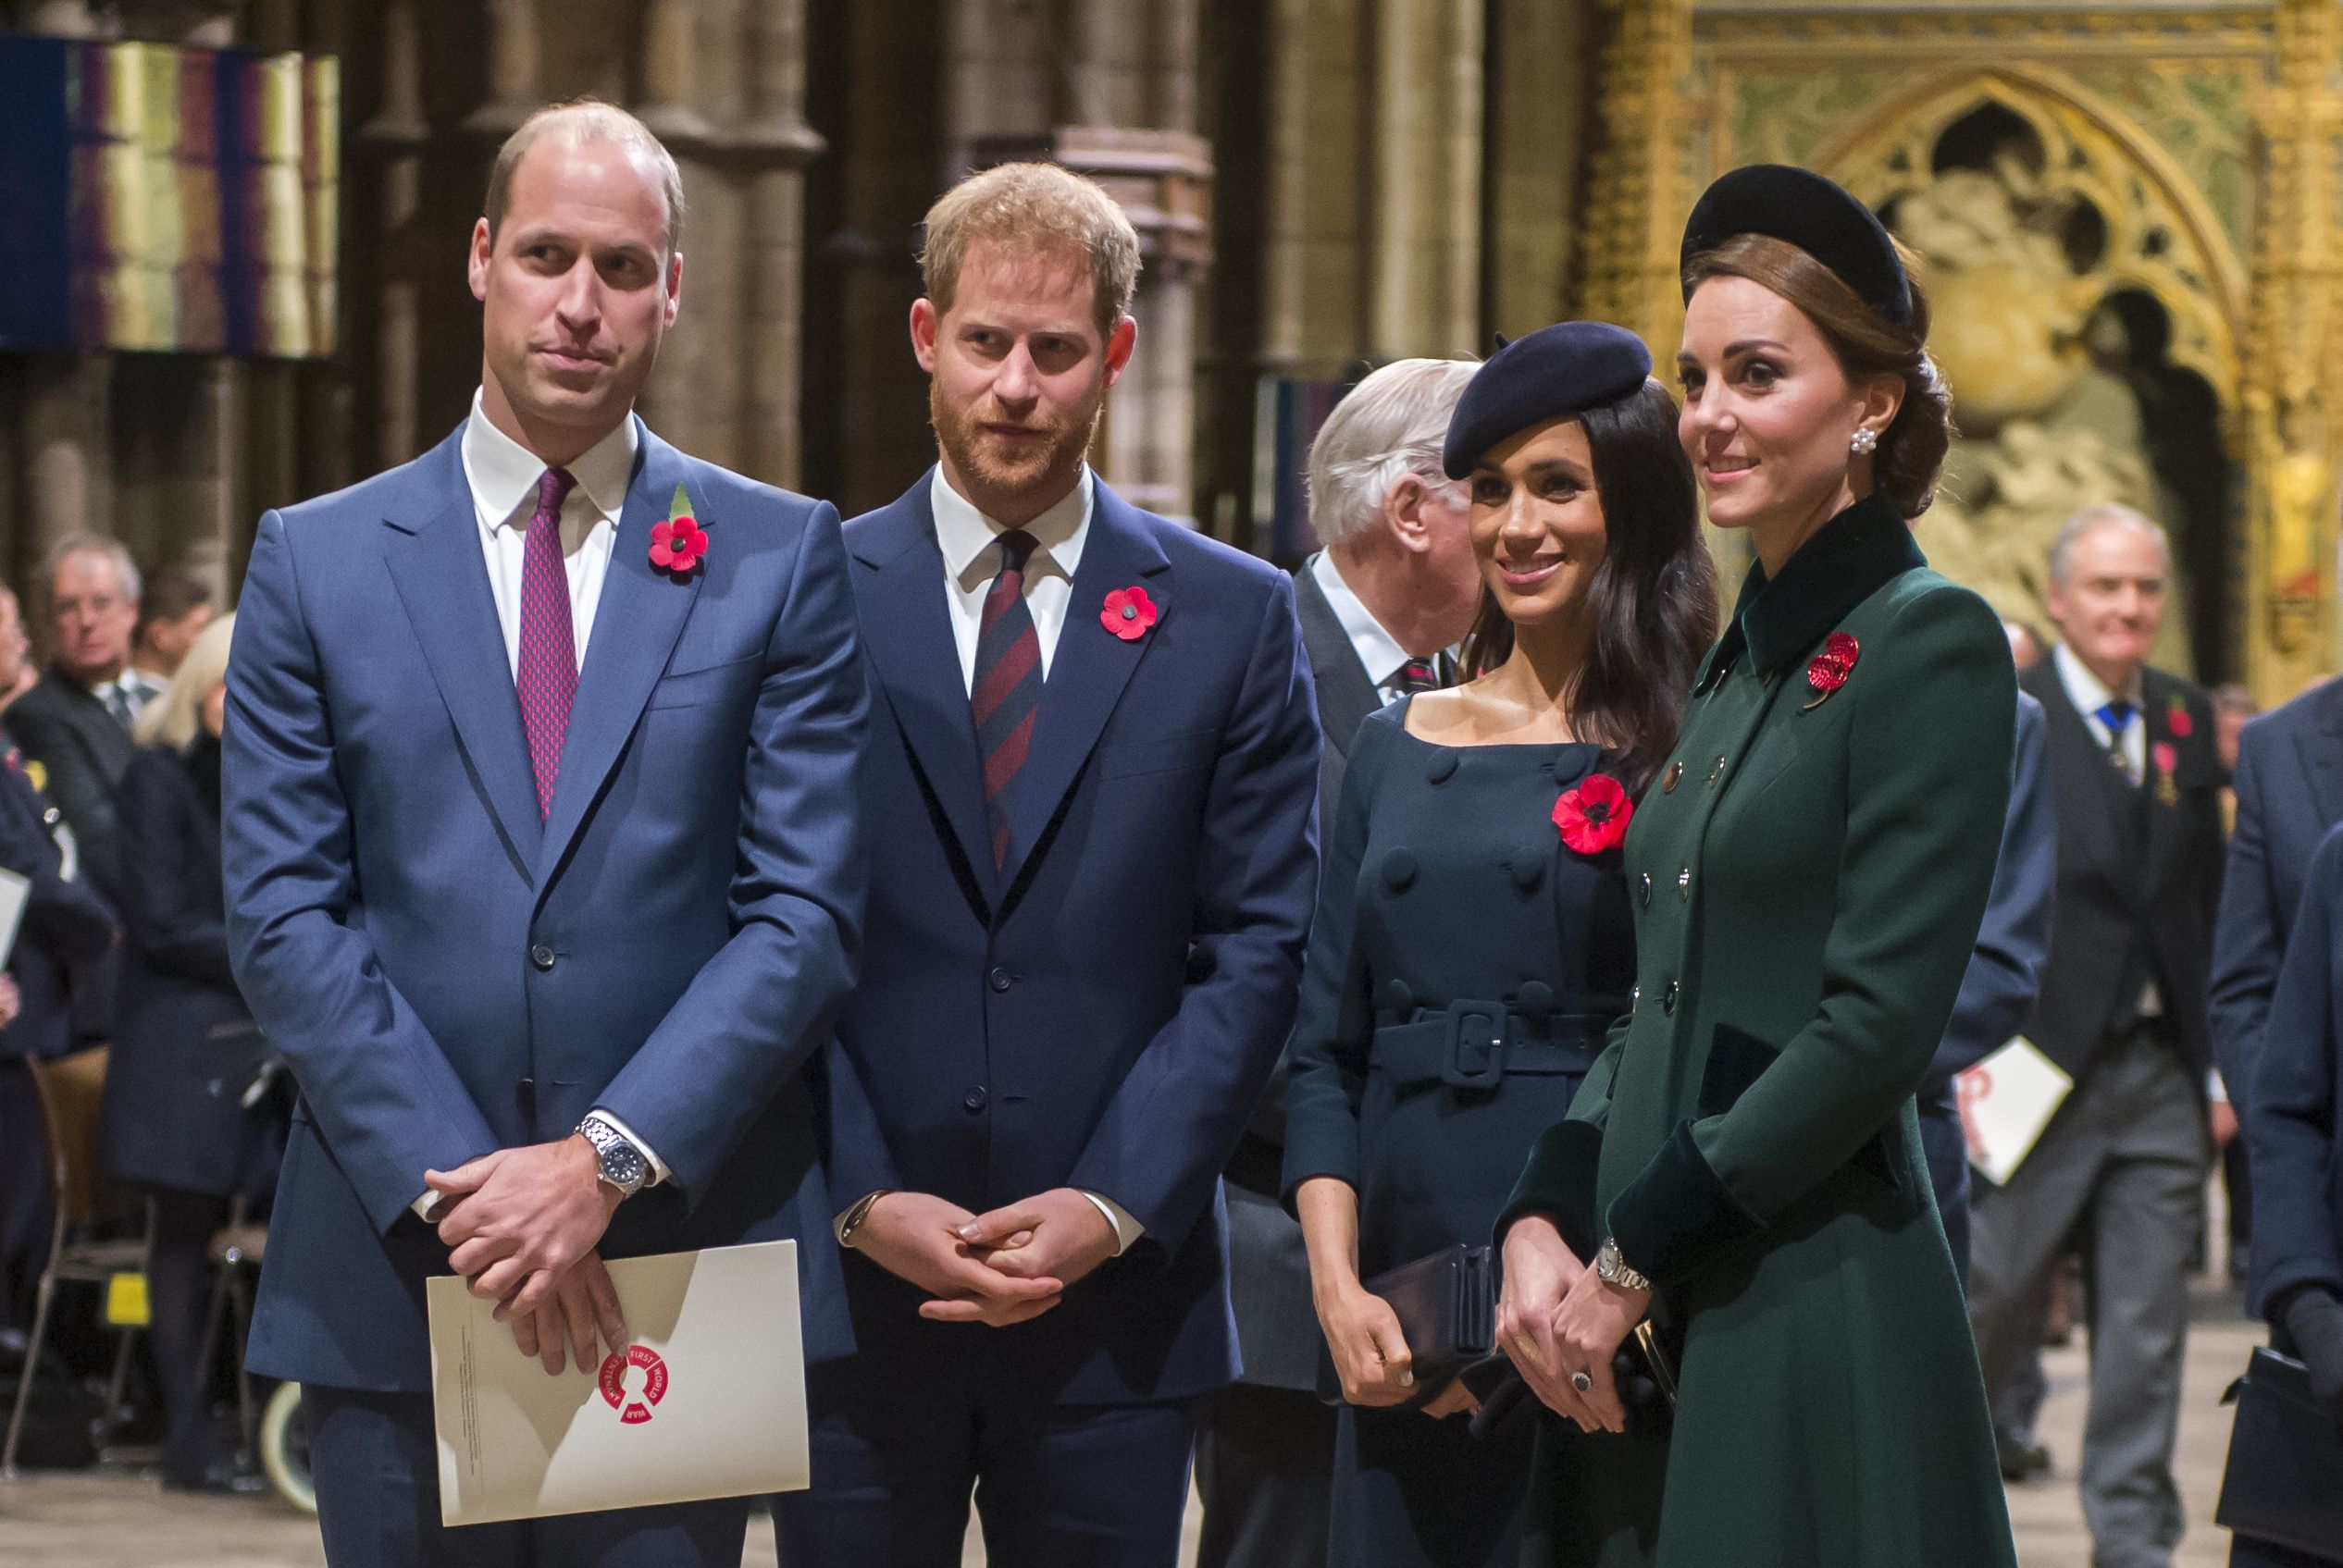 Prince Charles dan Prince William Disebut Marah Dengan Keputusan Harry dan Meghan Markle